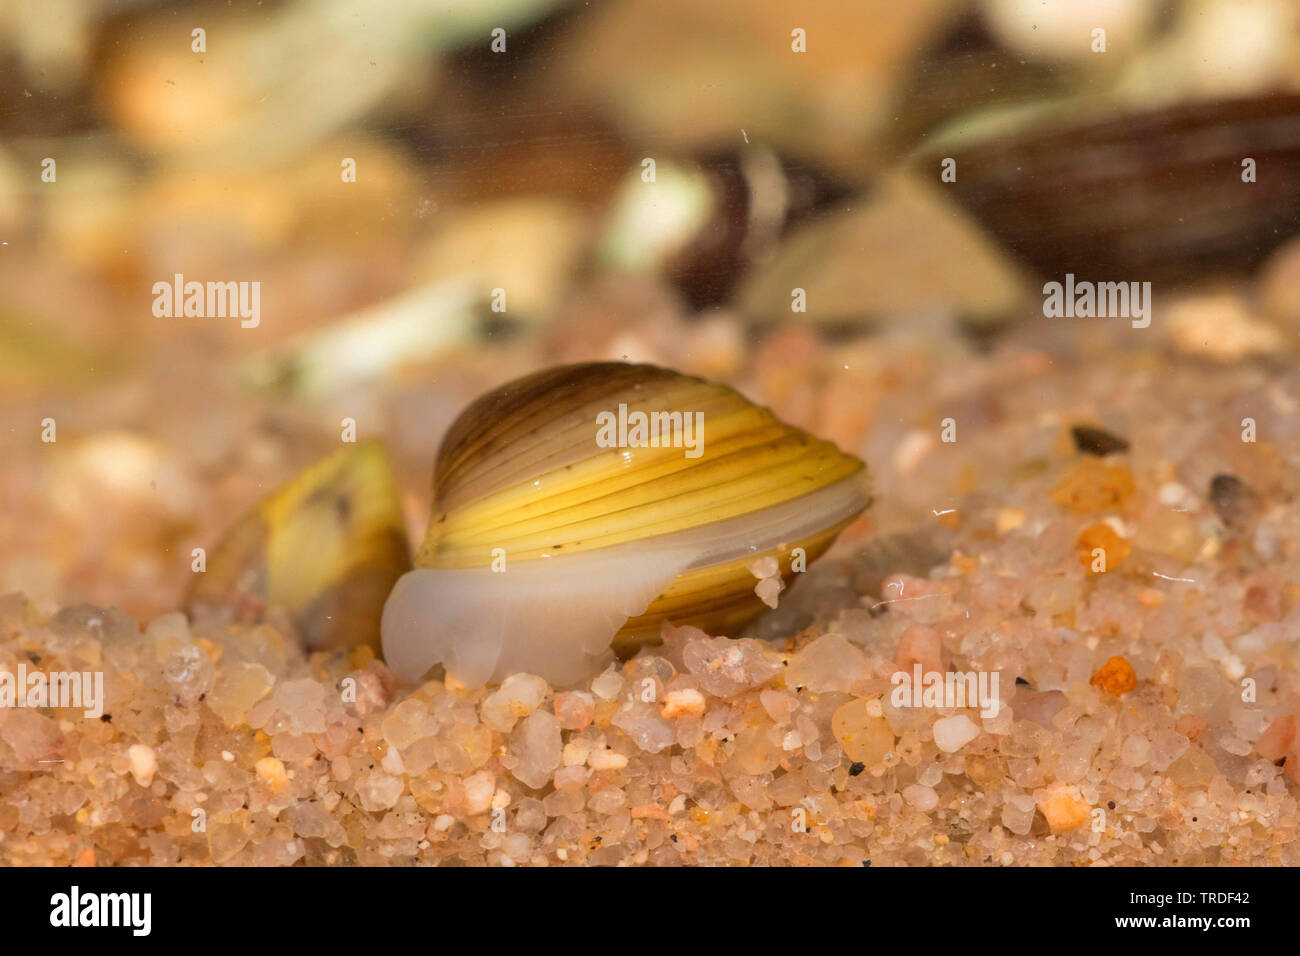 Asiatische clam, Asiatische, asiatische Körbchenmuschel corbicula (Corbicula fluminea), begraben in Sediment, Italien, Gardasee Stockfoto